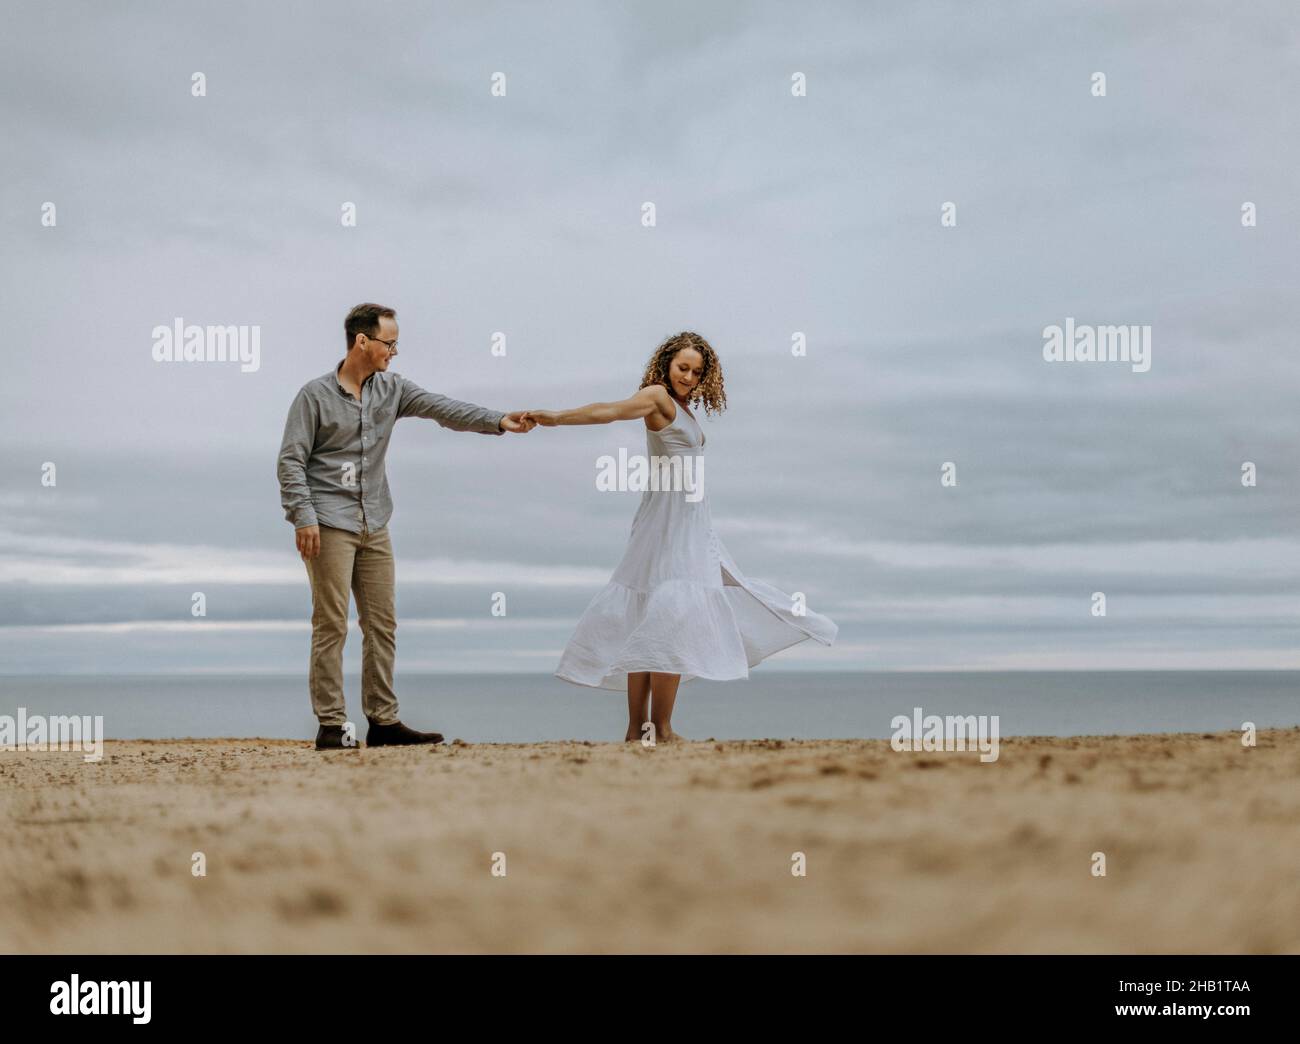 L'homme danse avec la femme en robe blanche sur la plage de sable à côté de l'eau Banque D'Images